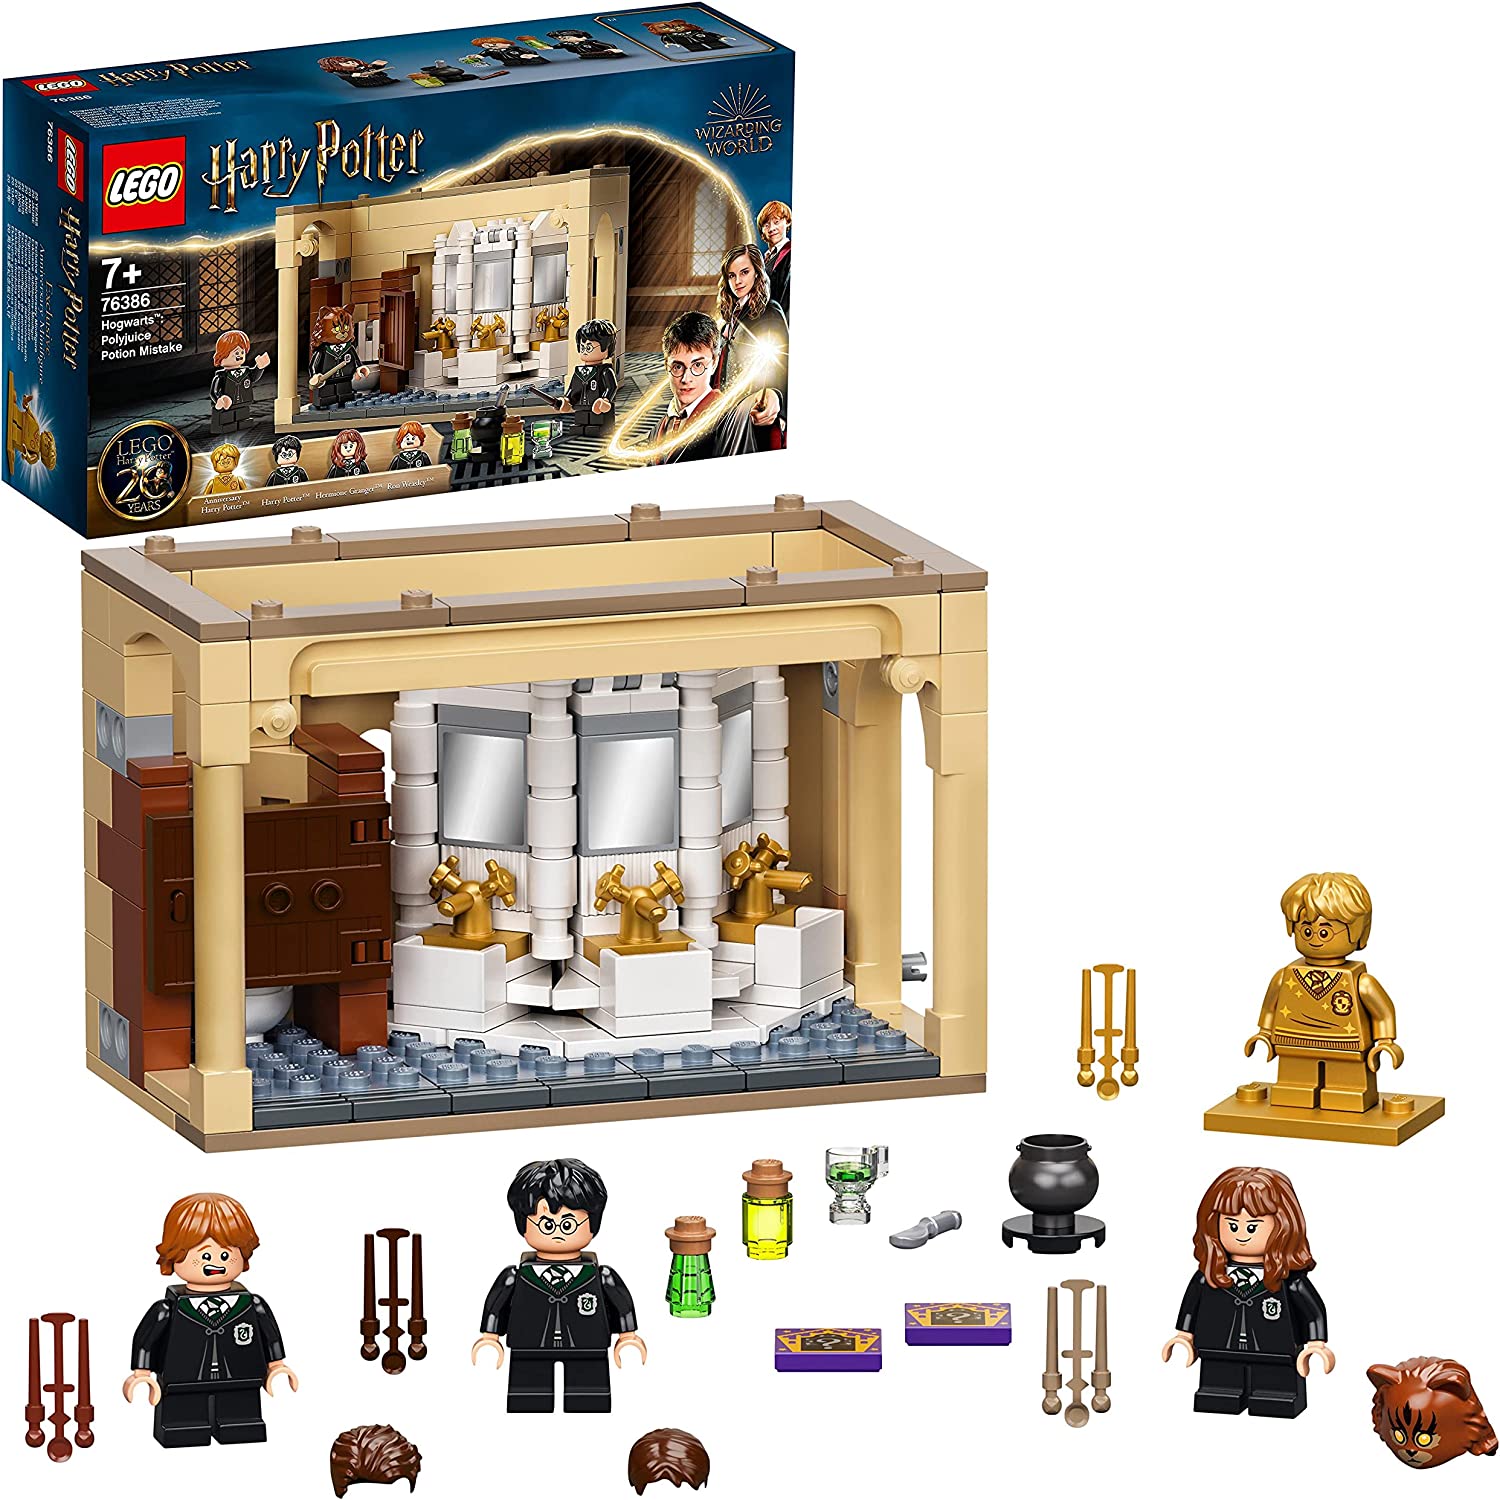 Bild zu Lego Harry Potter Hogwarts: Misslungener Vielsaft-Trank (76386) für 13,99€ (Vergleich: 16,36€)